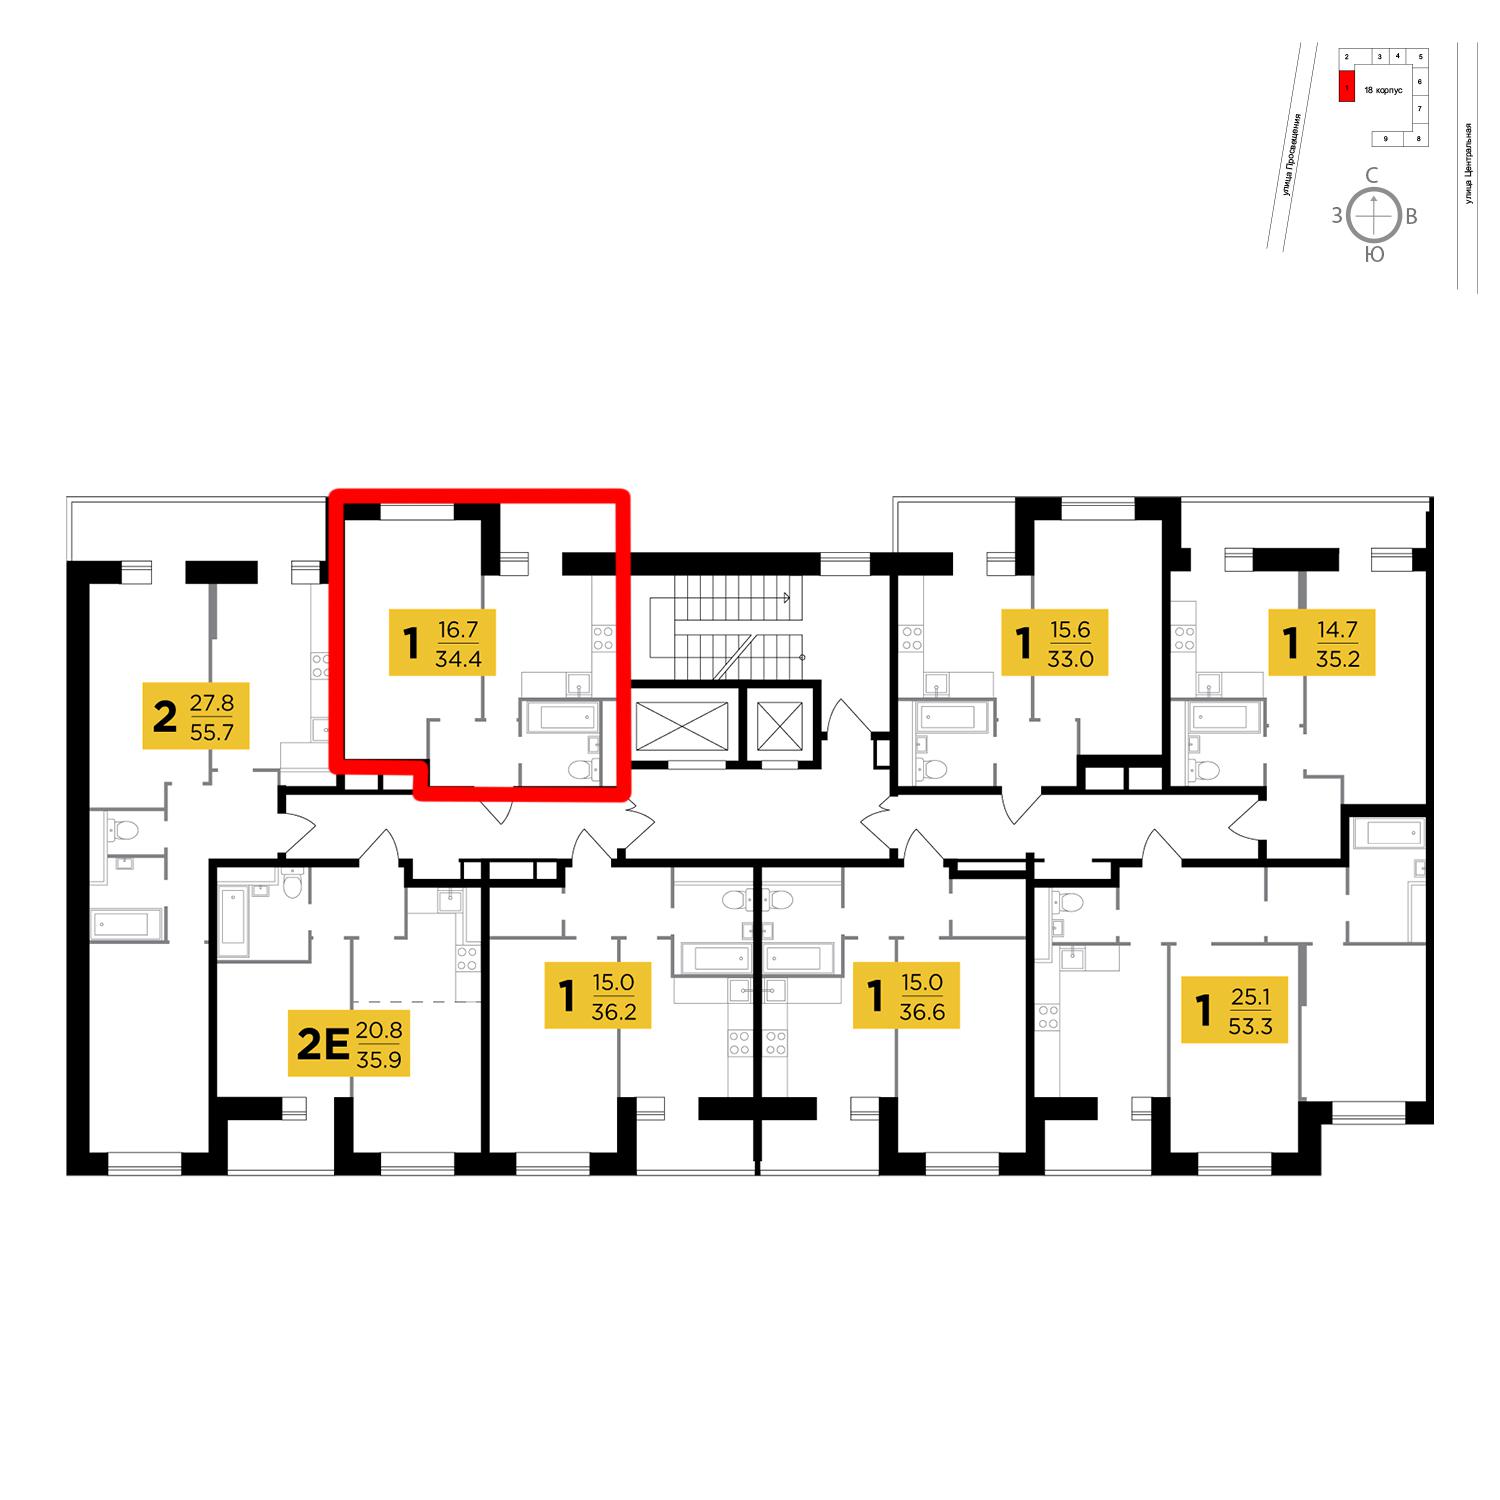 Продаётся 1-комнатная квартира в новостройке 34.4 кв.м. этаж 7/16 за 2 713 988 руб 